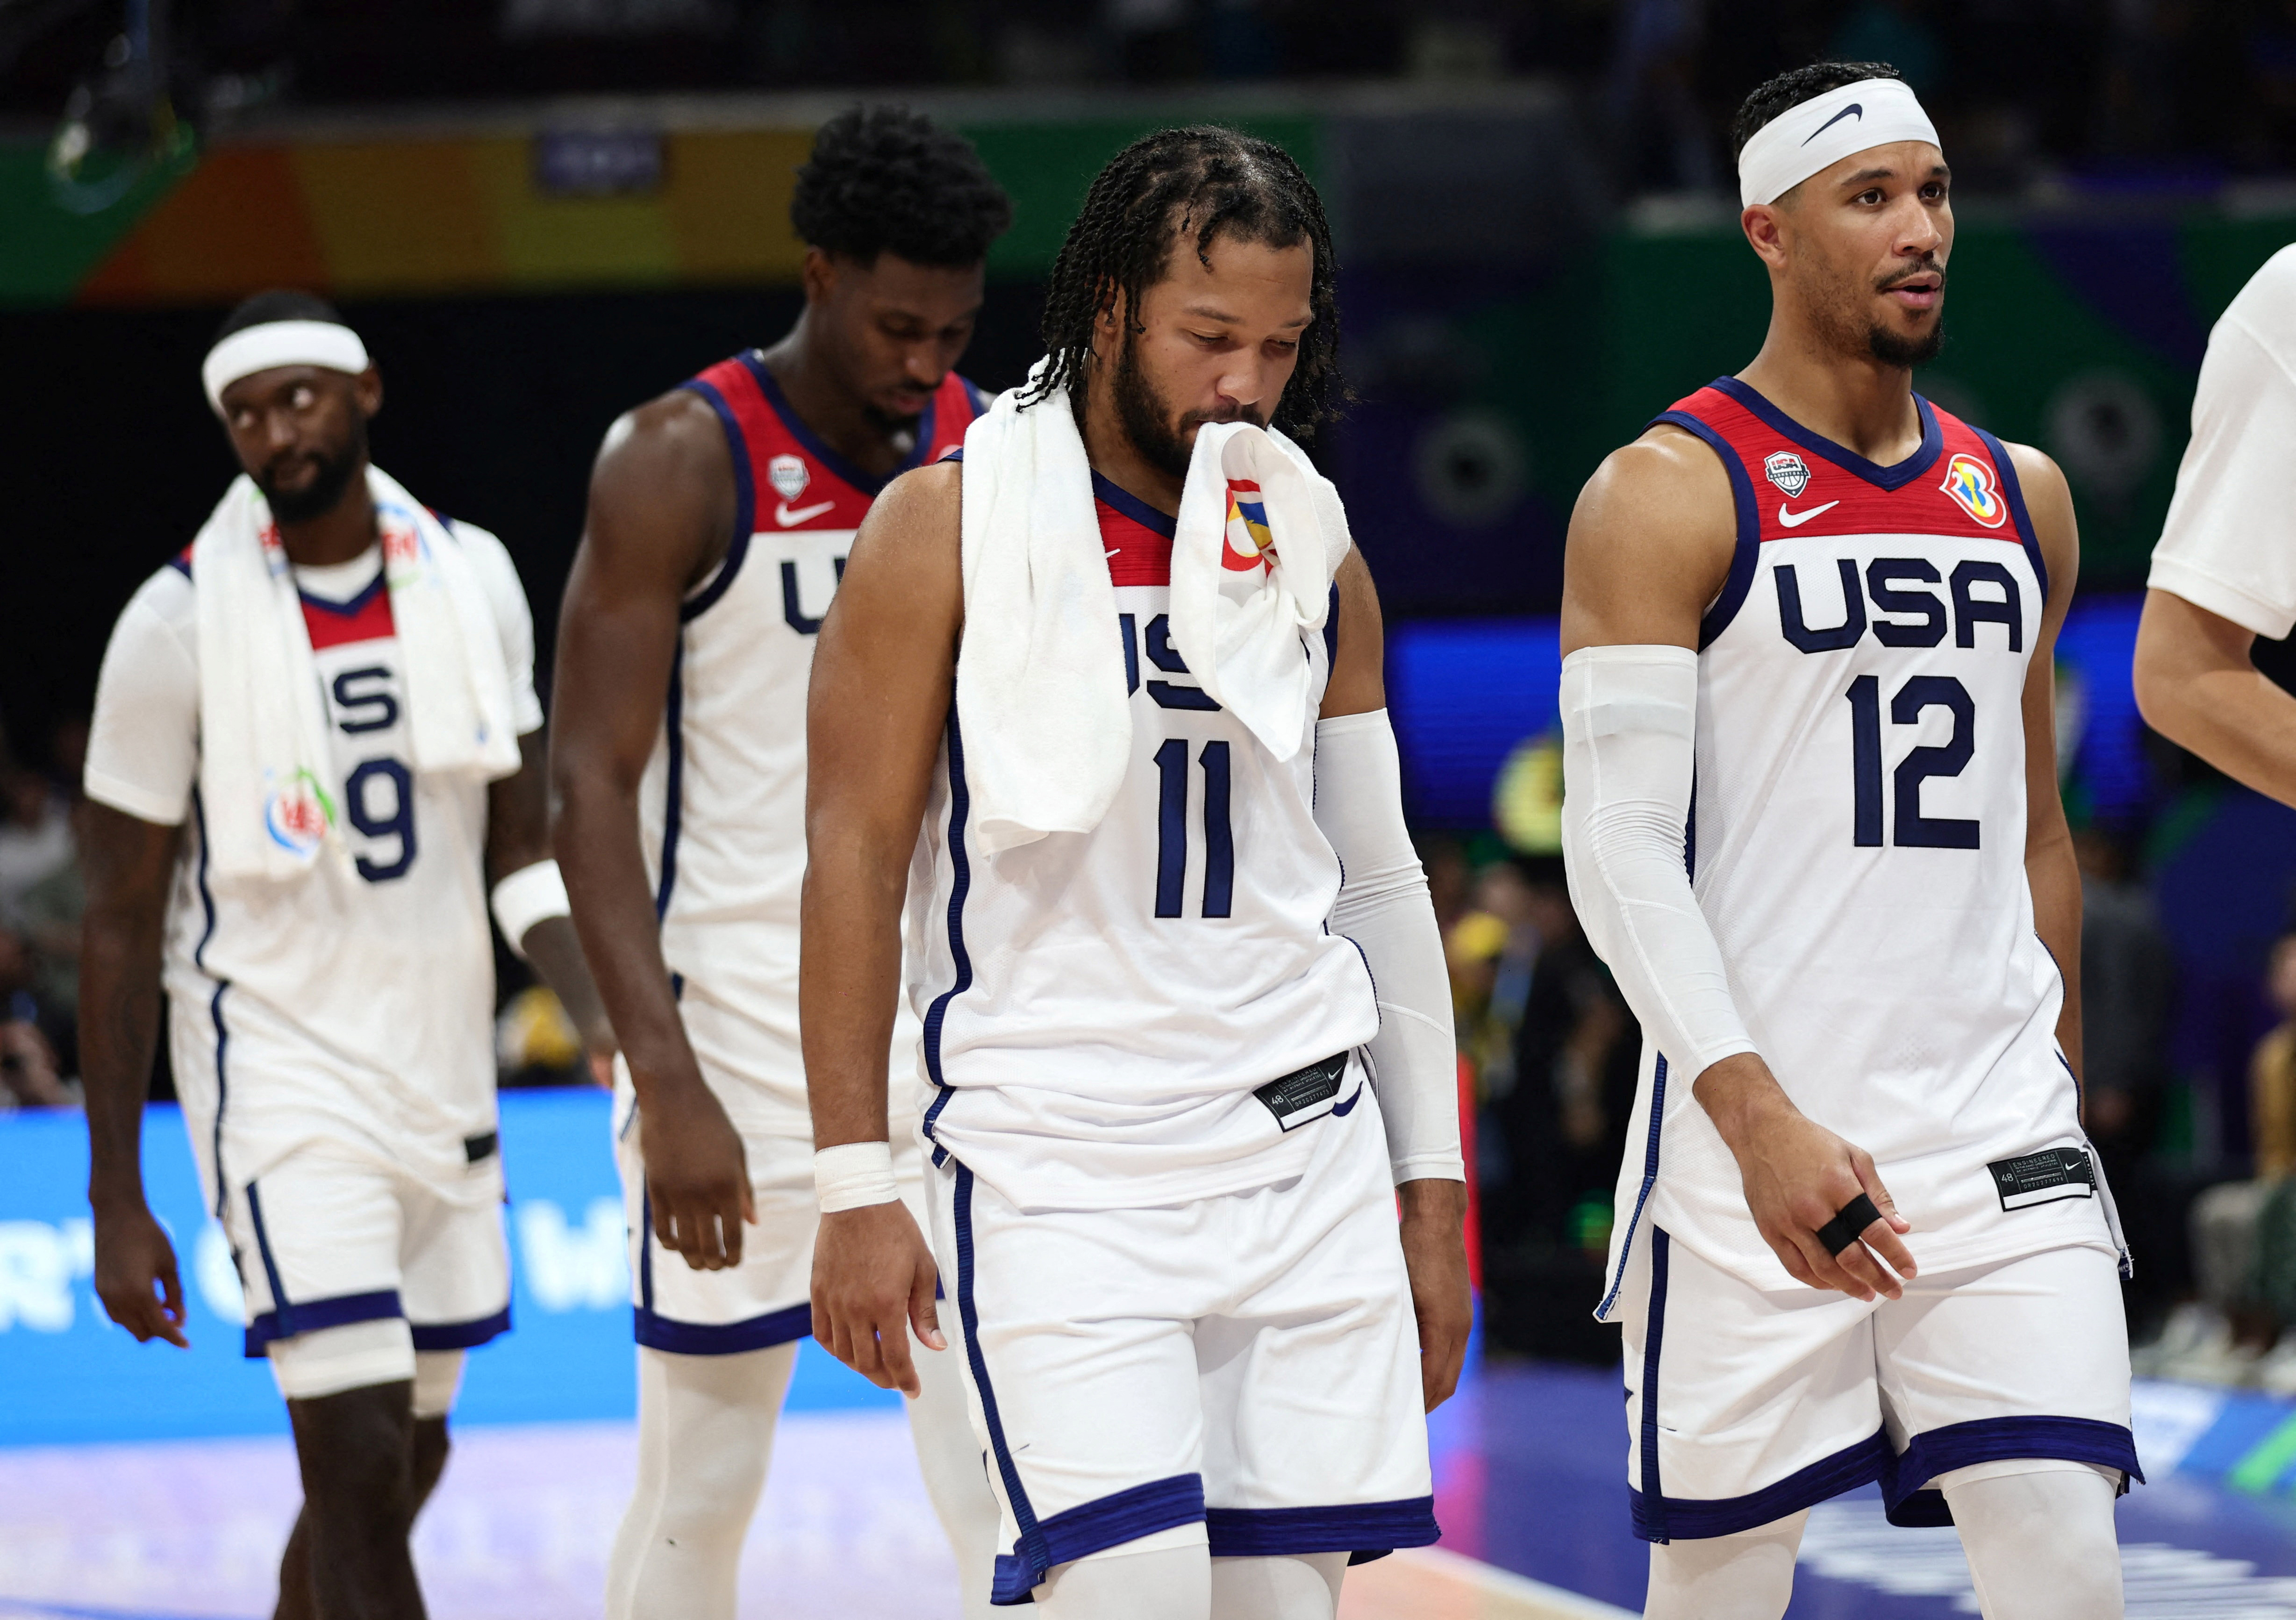 9일(한국시간) 농구 월드컵 4강에서 독일에 패해 결승 진출이 좌절된 미국 선수들이 허탈한 표정을 짓고 있다. 로이터 연합뉴스